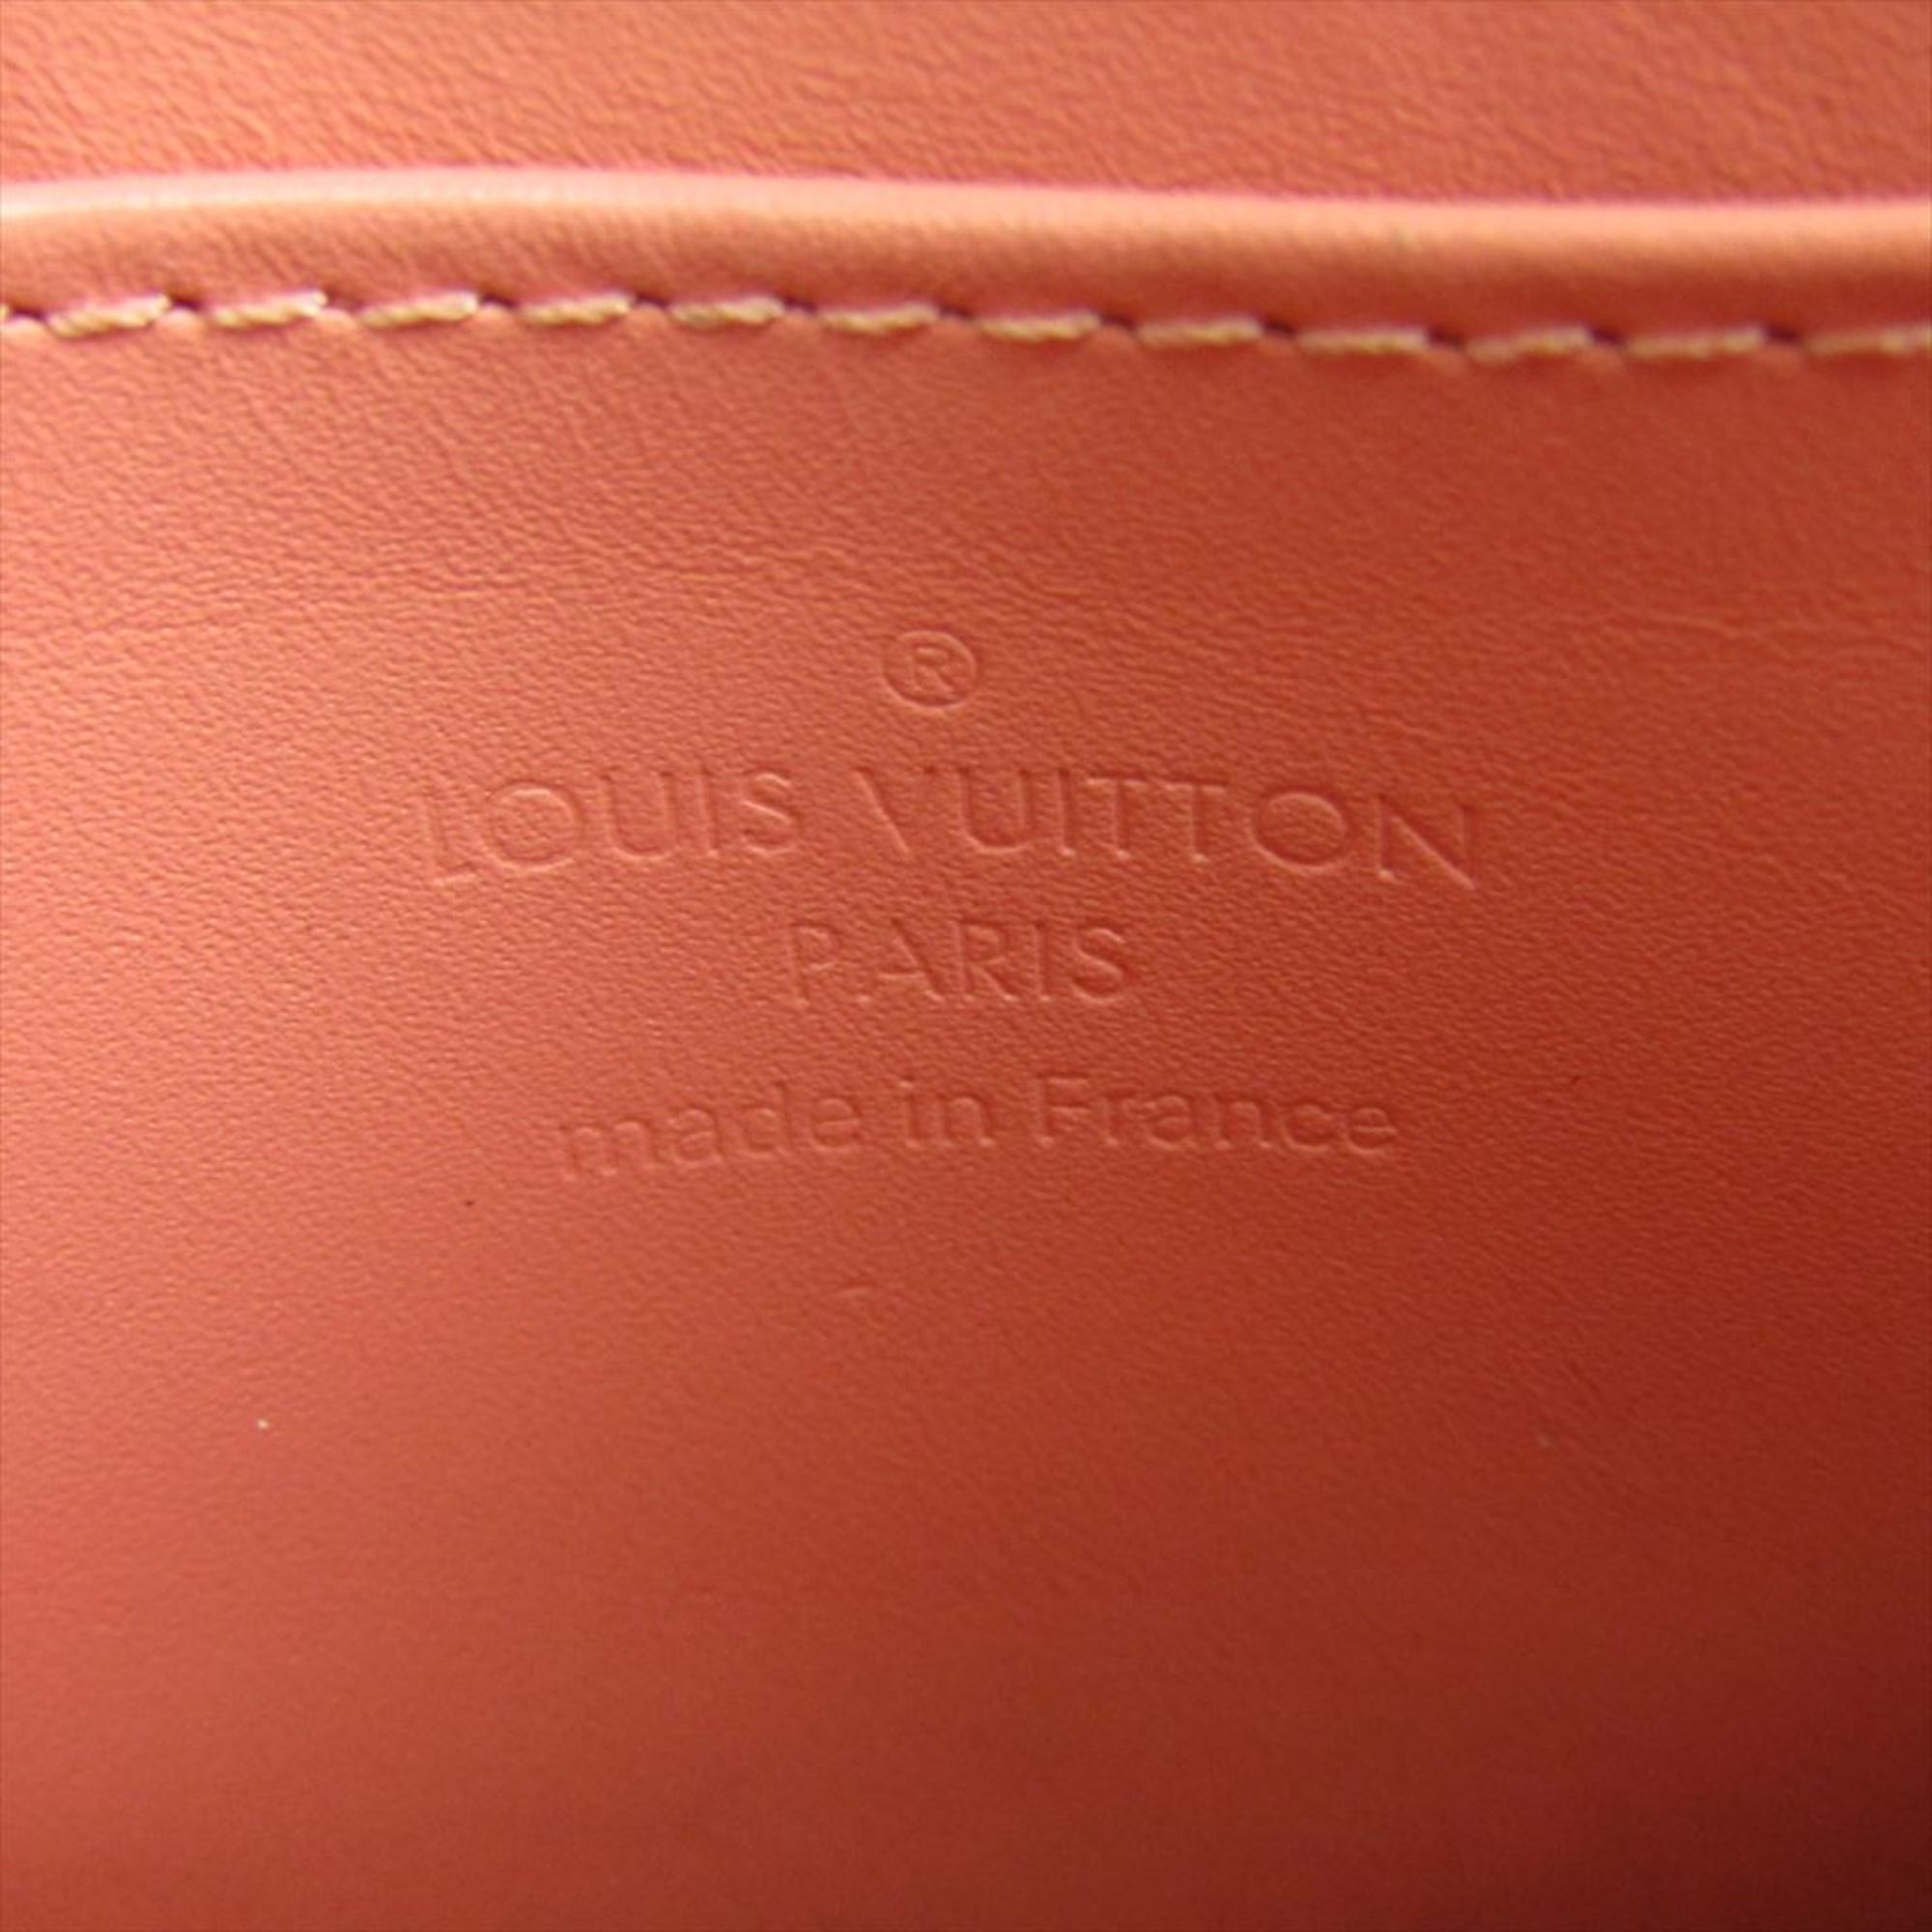 ルイ・ヴィトン(Louis Vuitton) ジッピー・コインパース M58065 レディース モノグラムヴェルニレイユール 小銭入れ・コインケース ポピーペタル